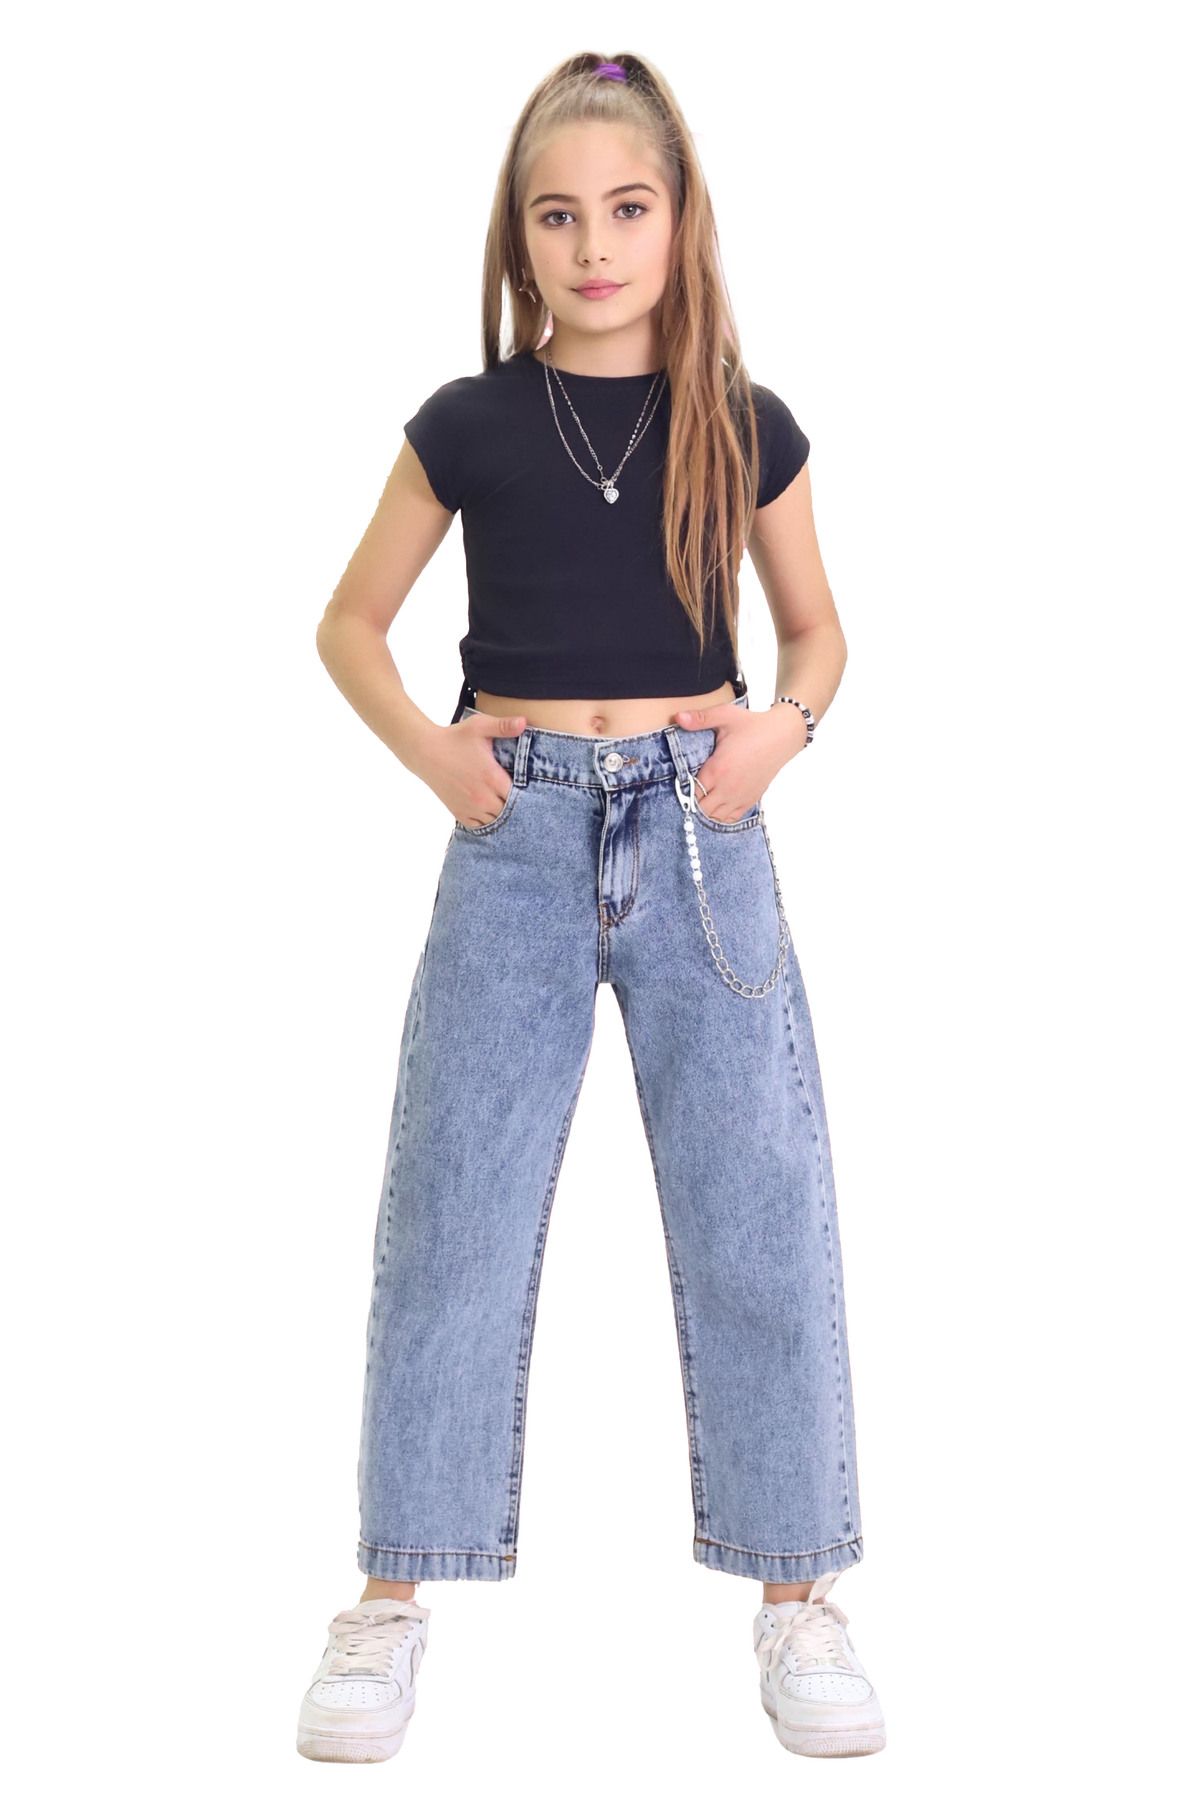 GZT TEKSTİL Kız Çocuk %100 Pamuk Bol Paça Zincirli Jeans Kot Pantolon (6-15 YAŞ)